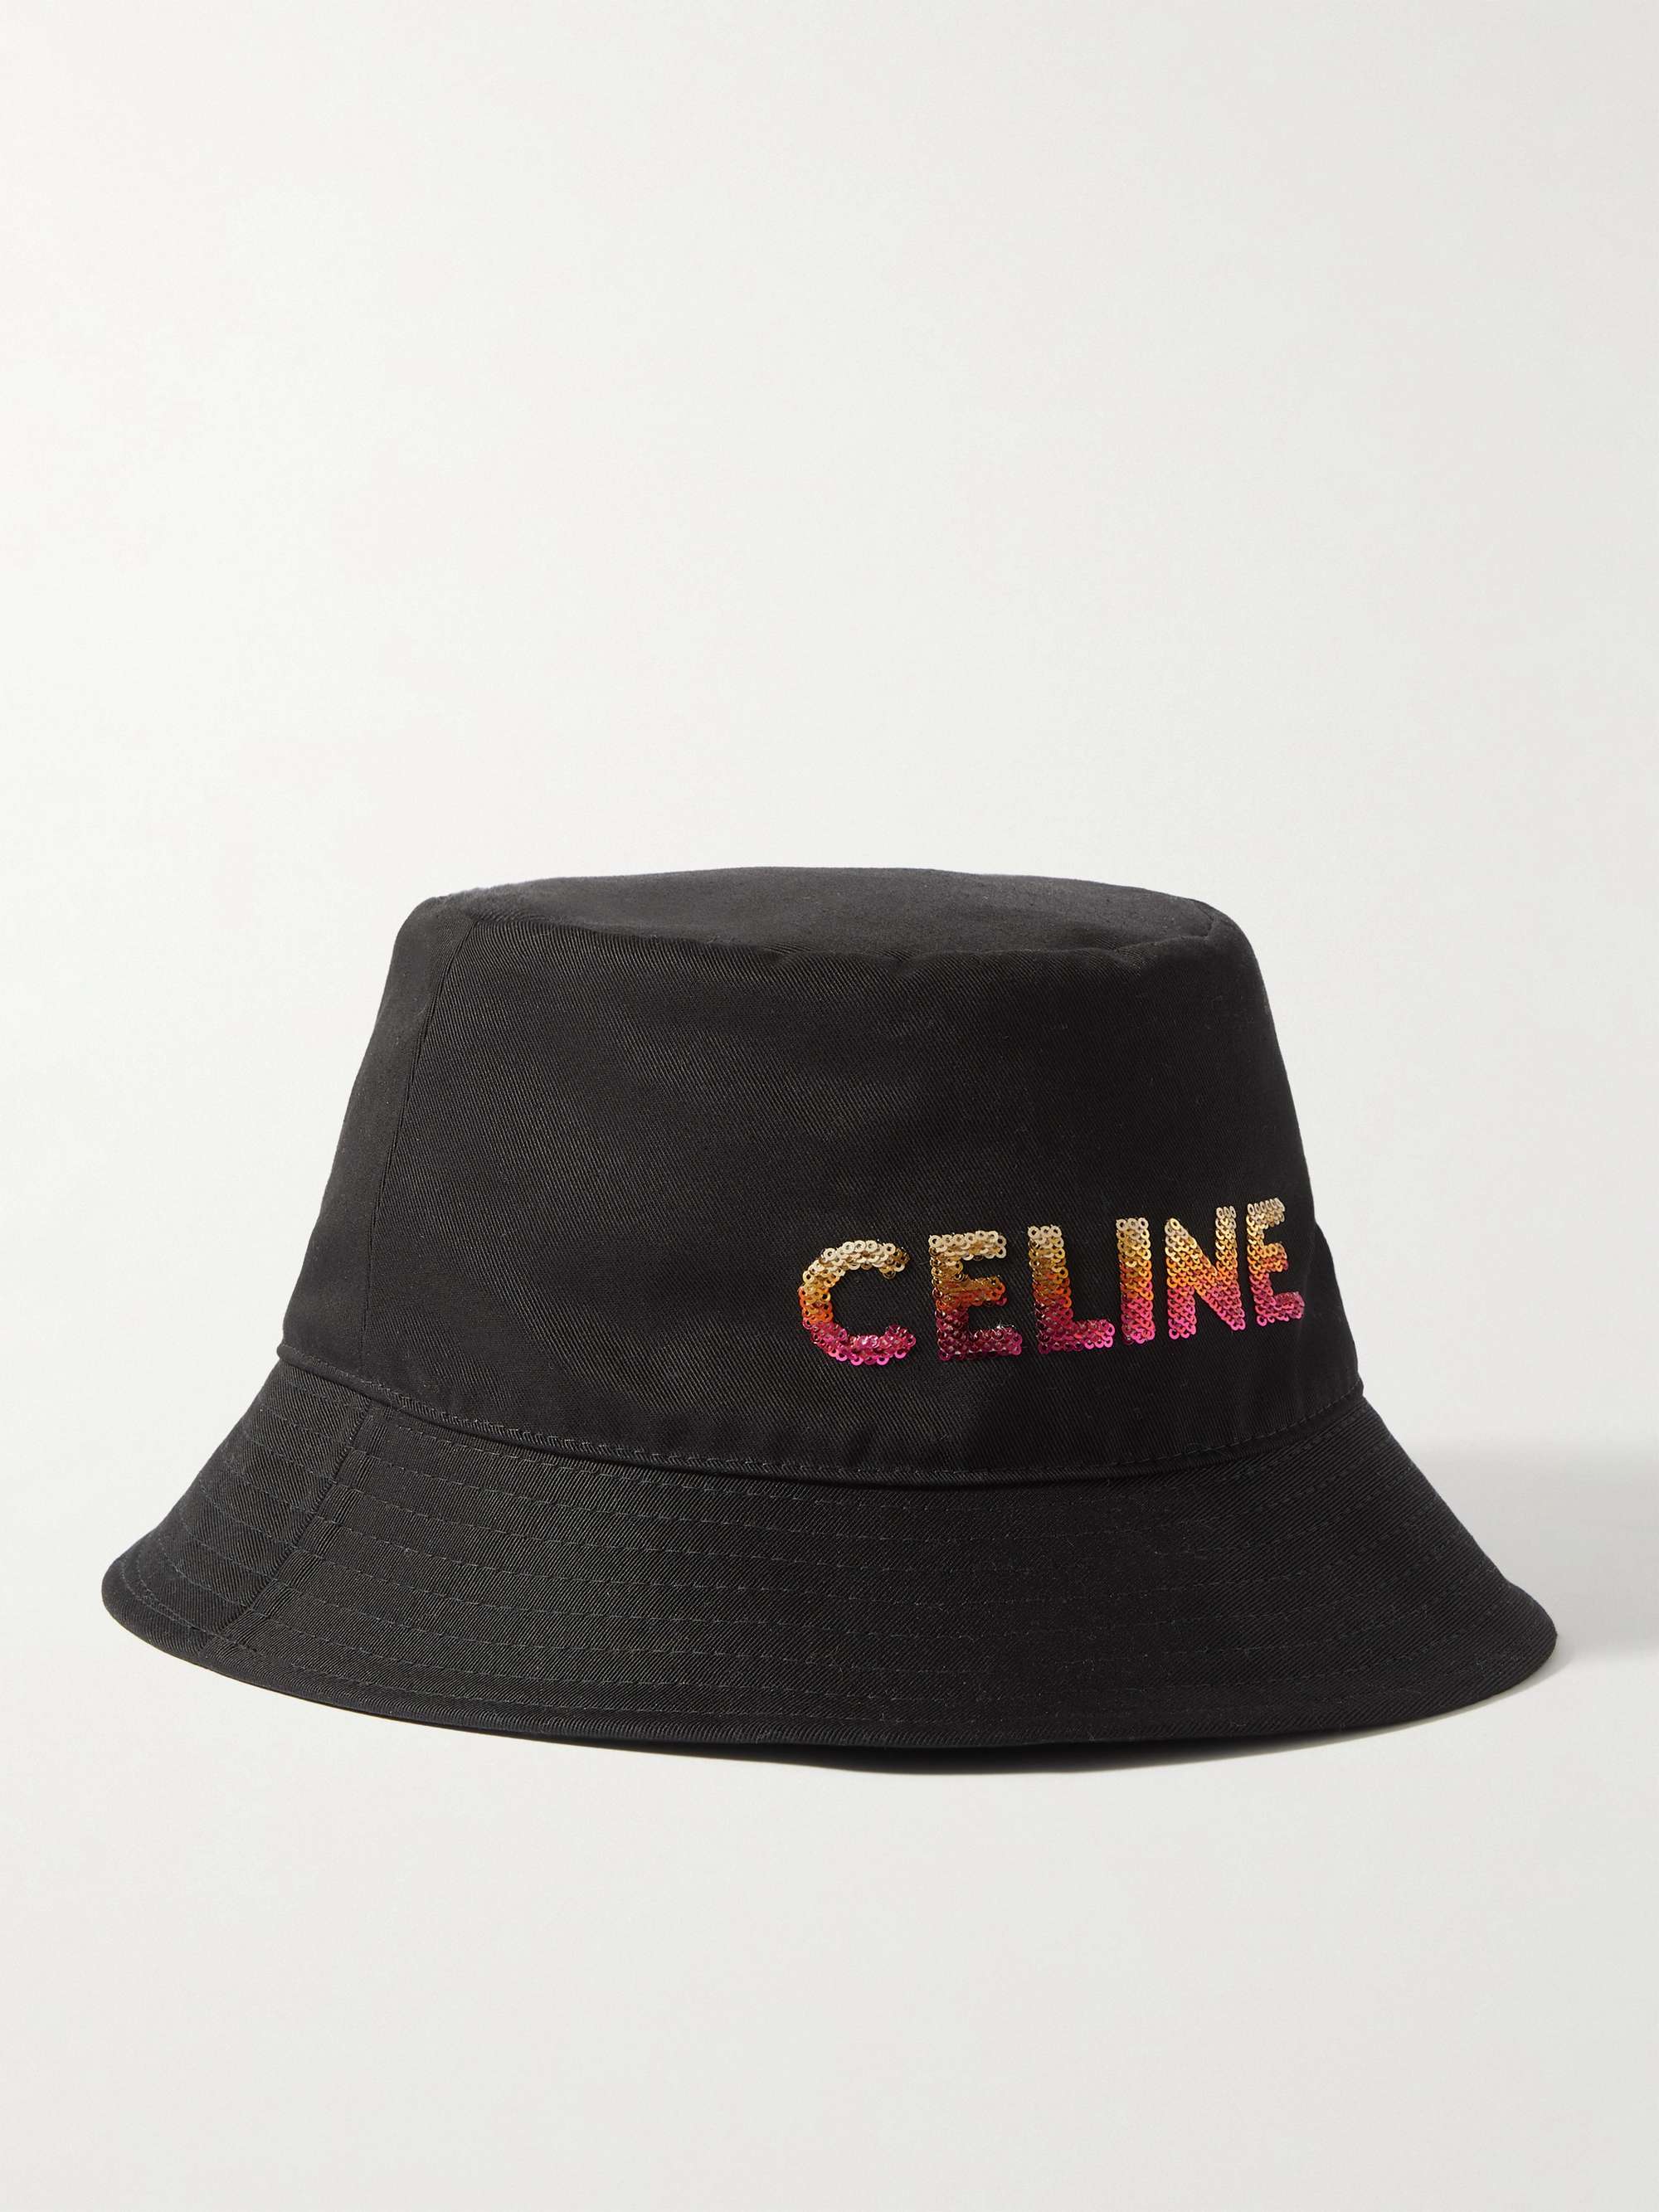 CELINE HOMME Bob Sequin-Embellished Cotton-Twill Bucket Hat